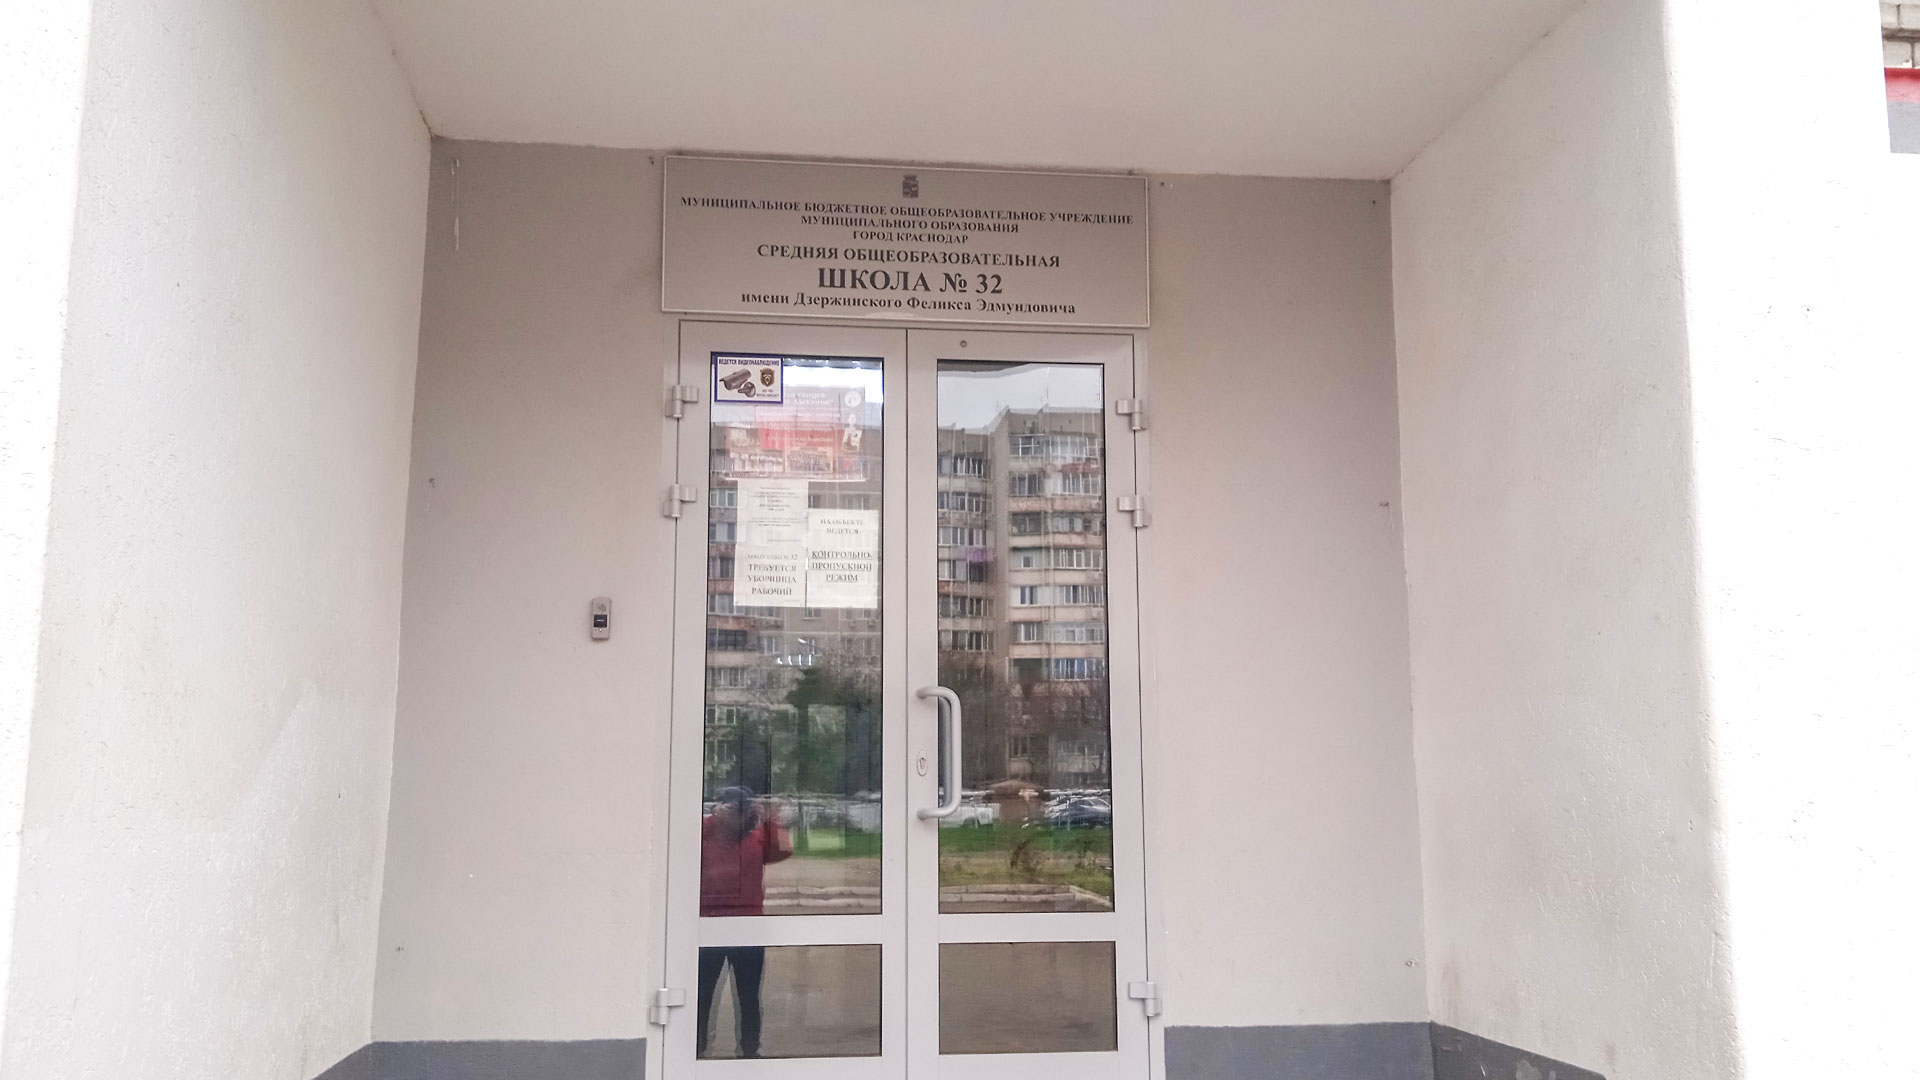 Центральный вход школы №32 г. Краснодар.